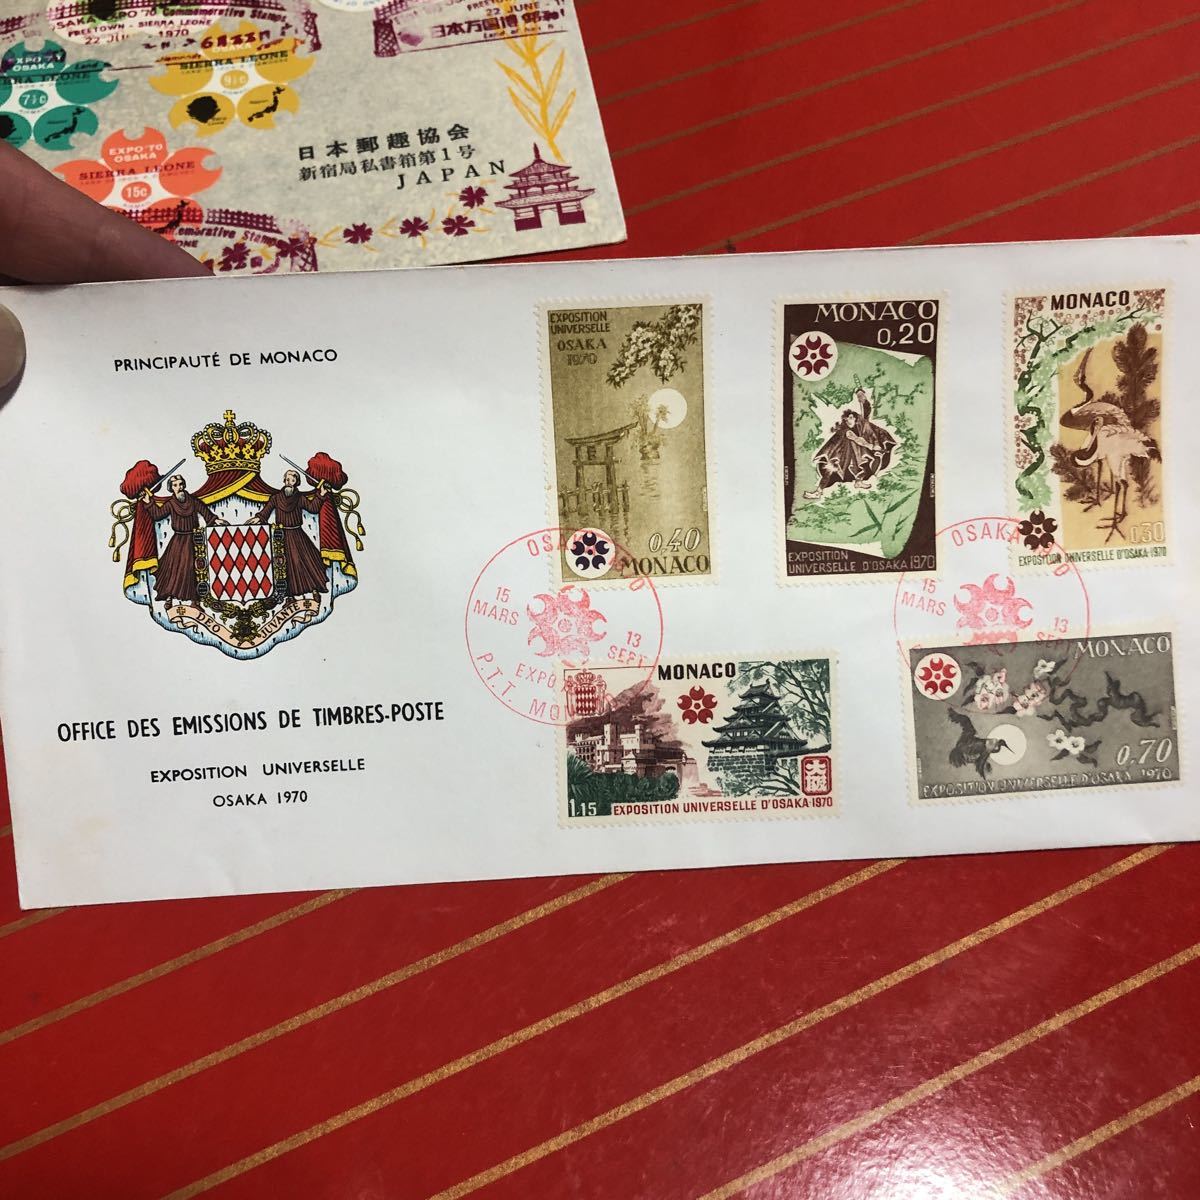 EXPO70大阪万博の封筒2つ海外切手消印ありの画像3